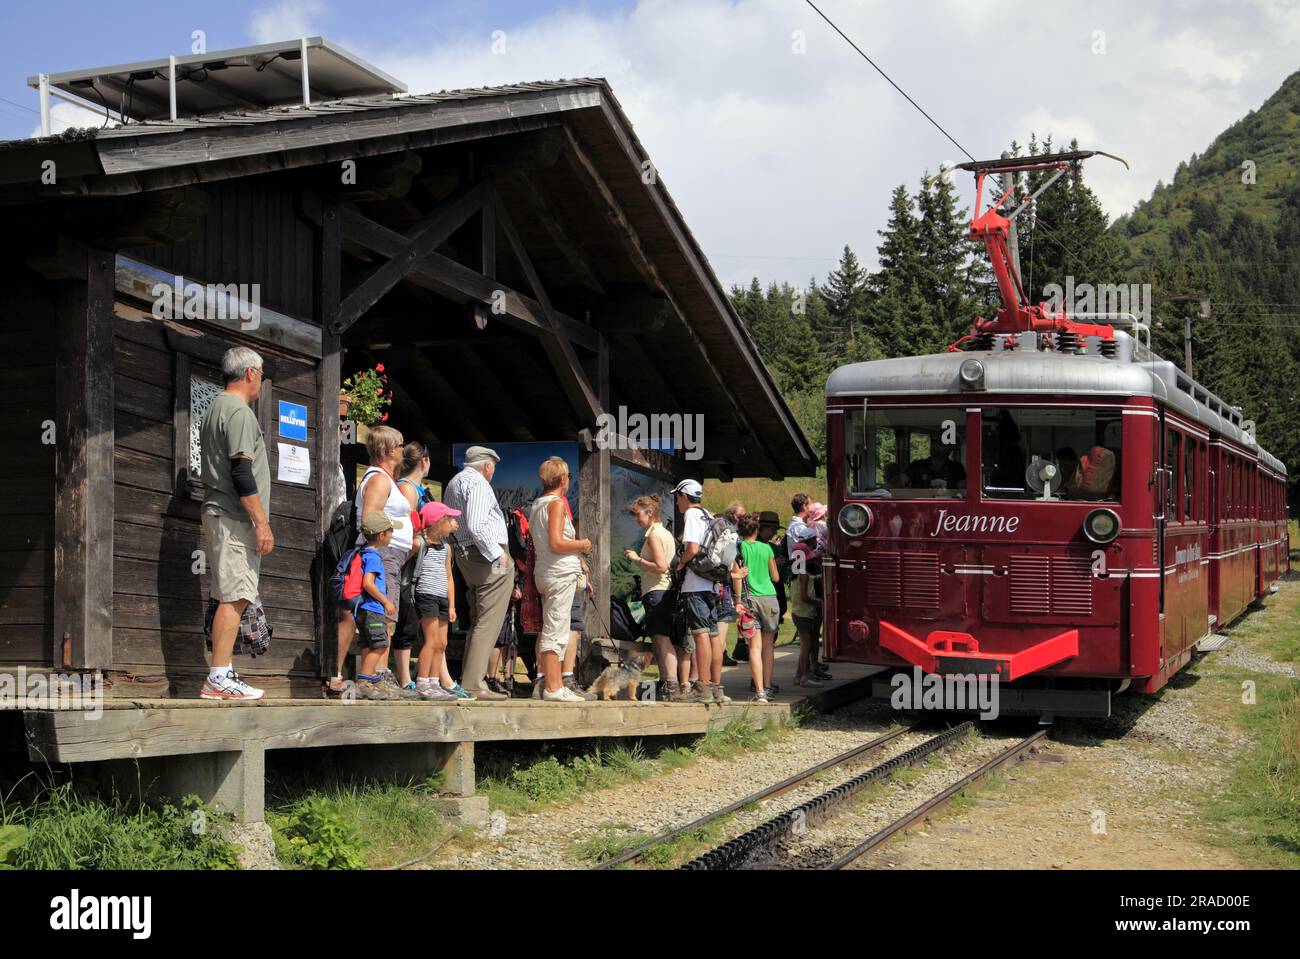 The Mont Blanc rack railway, Saint-Gervais-les-Bains, France Stock Photo